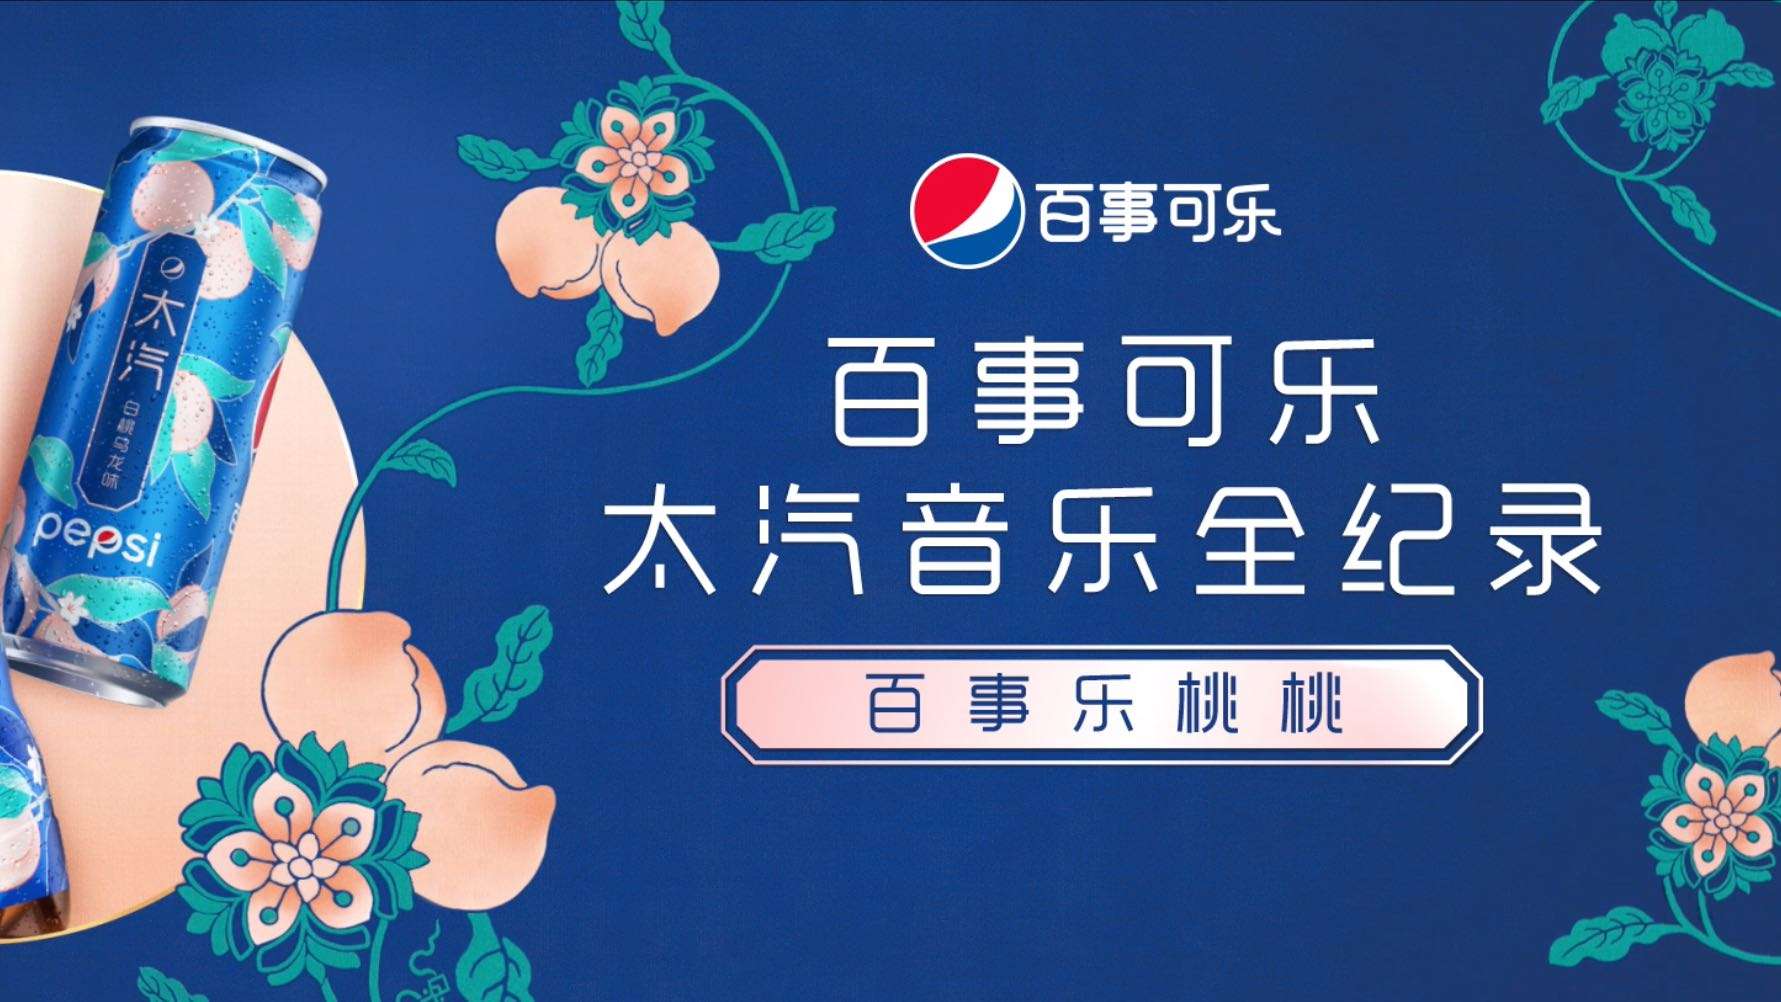 Pepsi 百事樂桃桃 ｜BTS纪录片